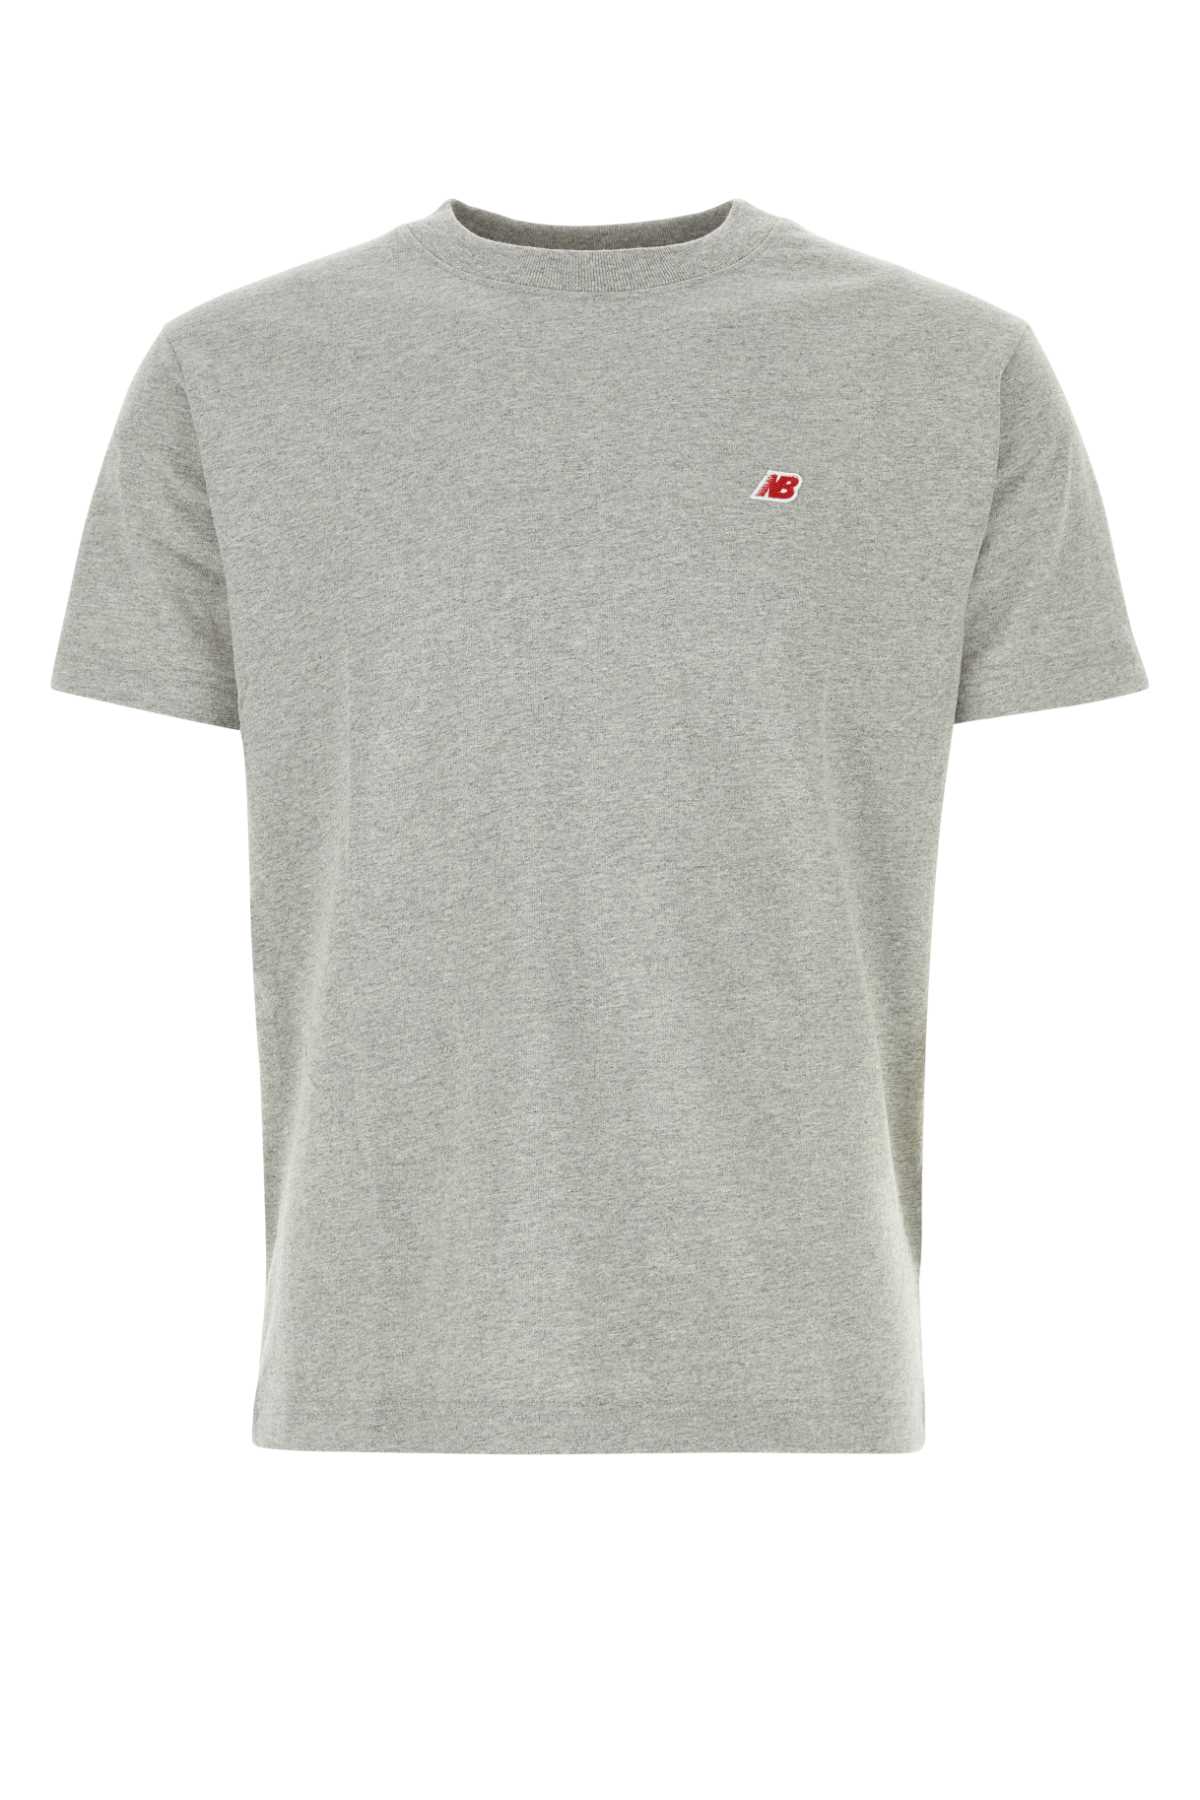 Shop New Balance Grey Cotton Blend T-shirt